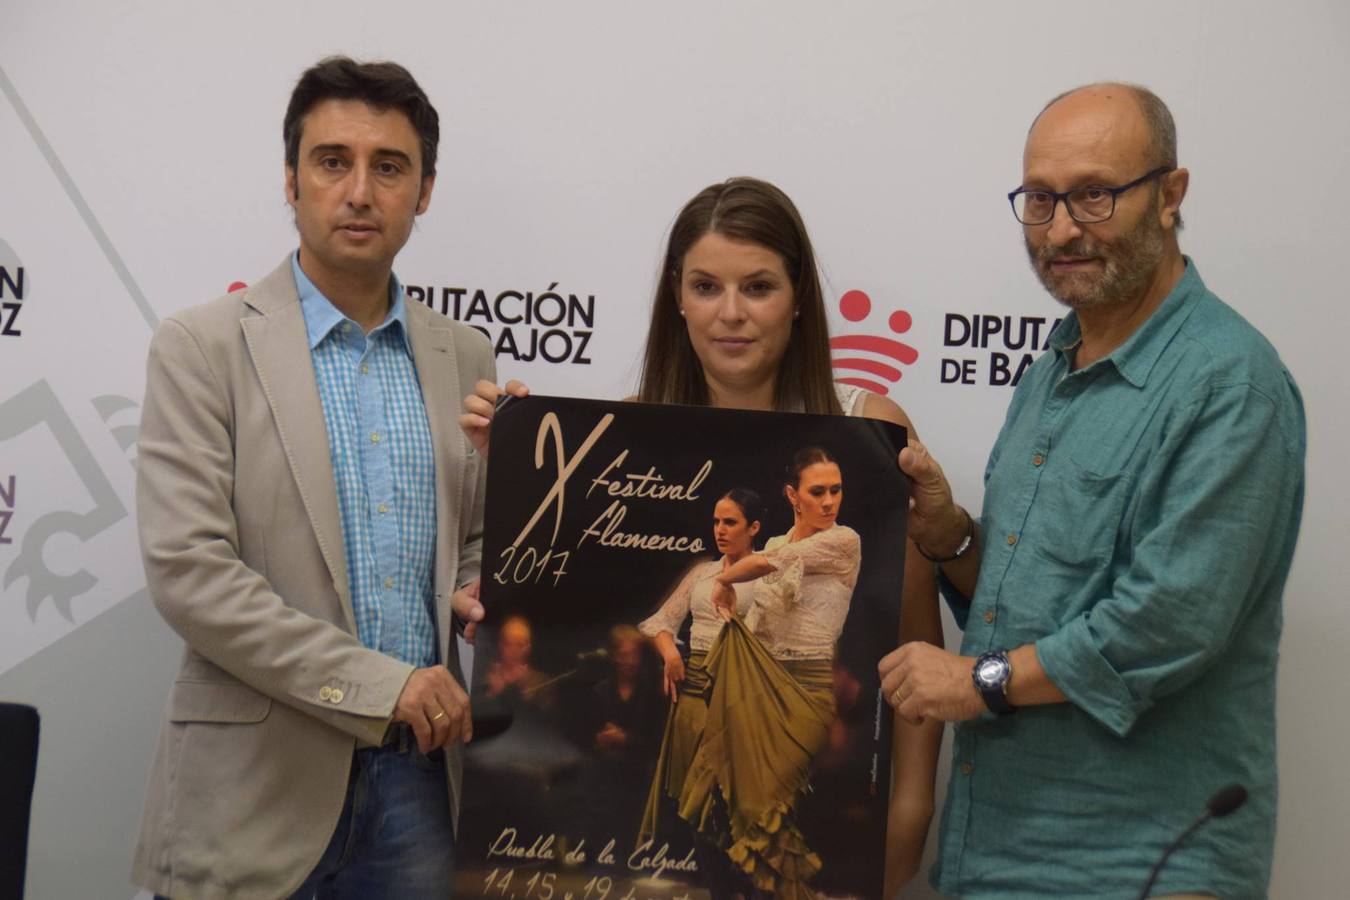 Manuel Pajares, Manuela Sánchez y Aurelio Gallardo conforman el 'X Festival Flamenco'